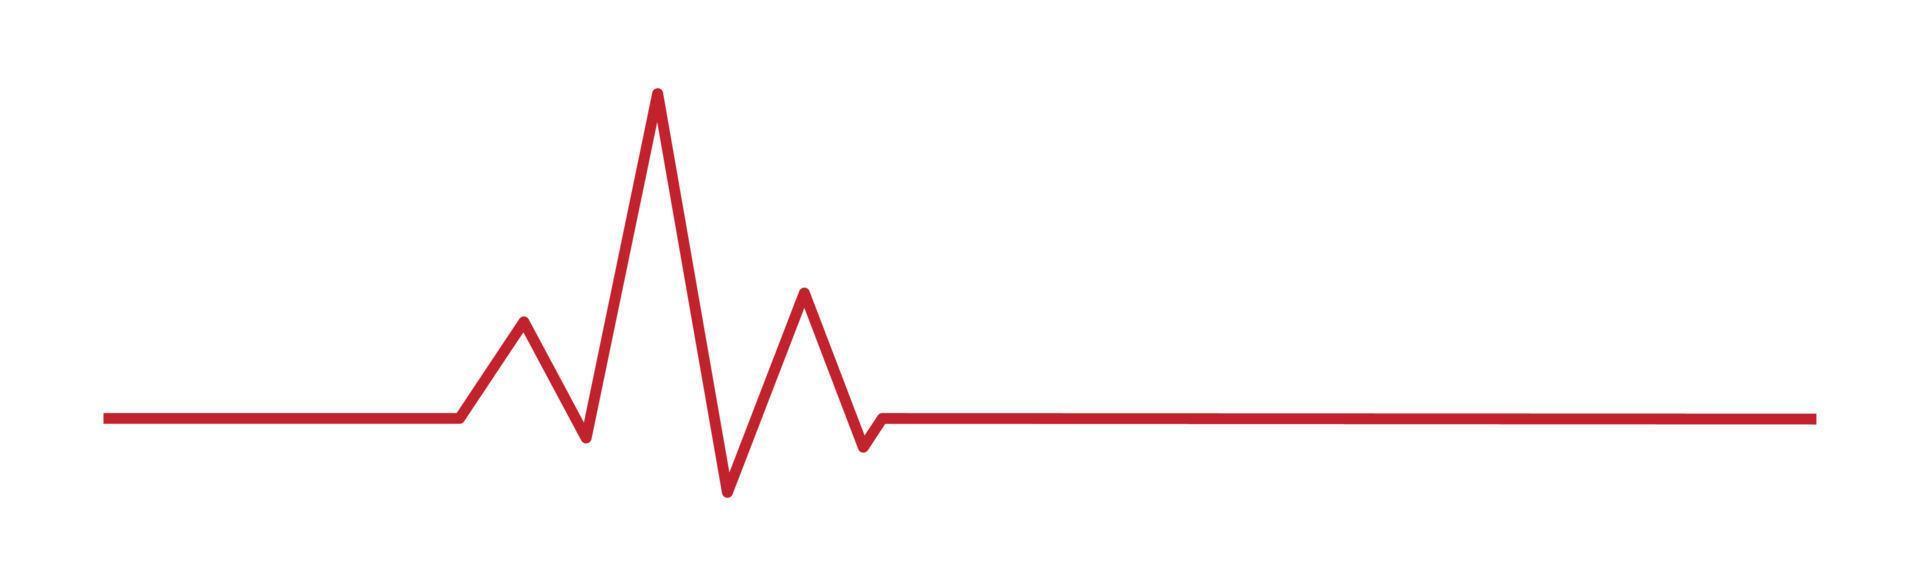 pulso do coração - linha vermelha curvada em um fundo branco - vetor